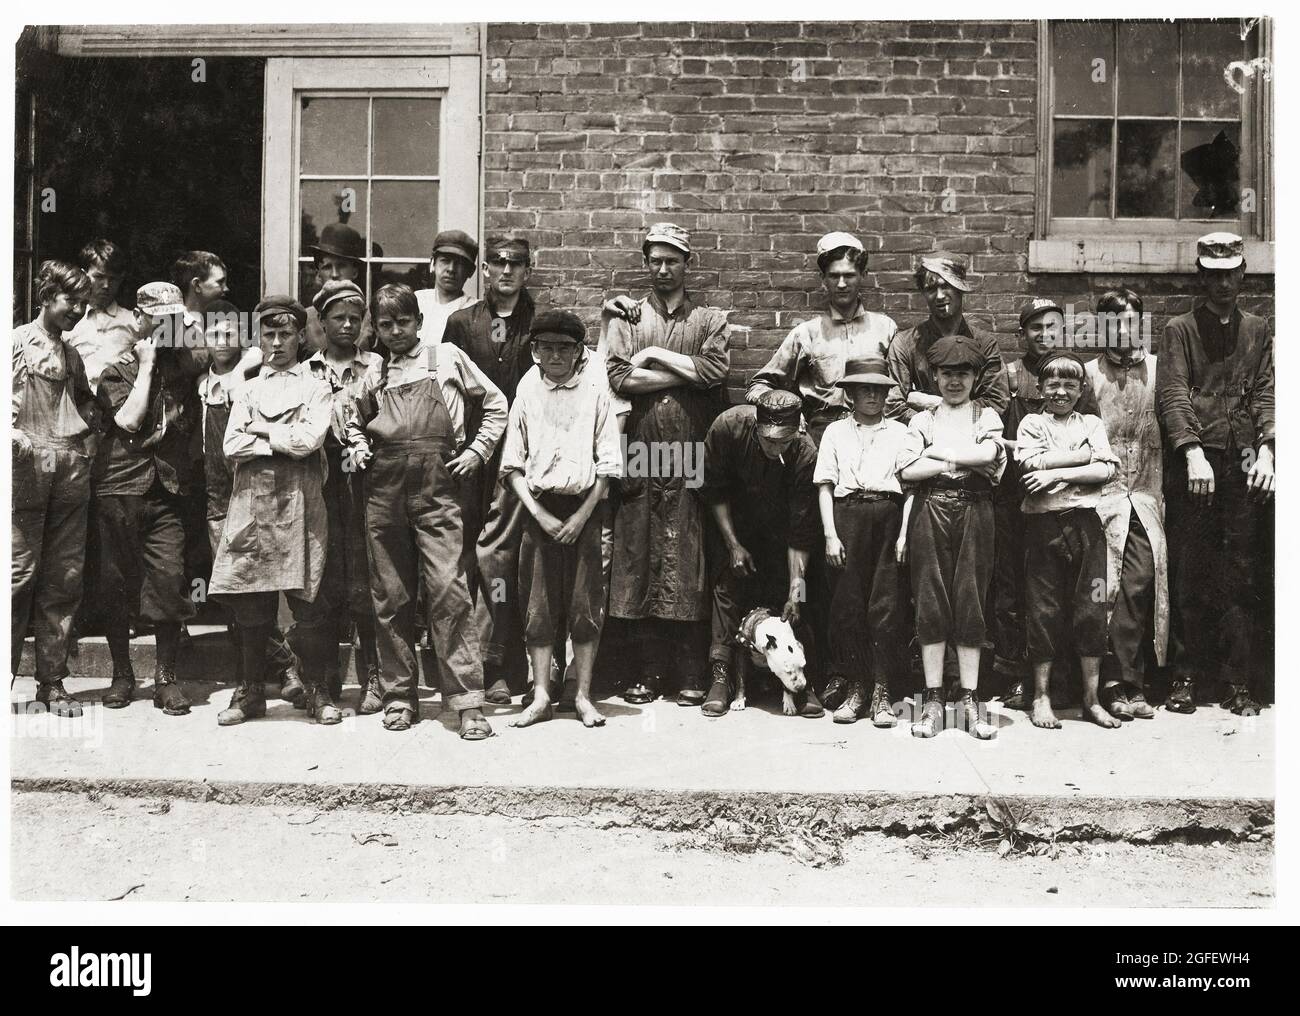 Einige der jungen Arbeiter in der West End Shoe Factory, Lynchburg, (Virginia). Kinderarbeit. Lewis Hine, 1874-1940, Fotograf. Mai 1911. Stockfoto